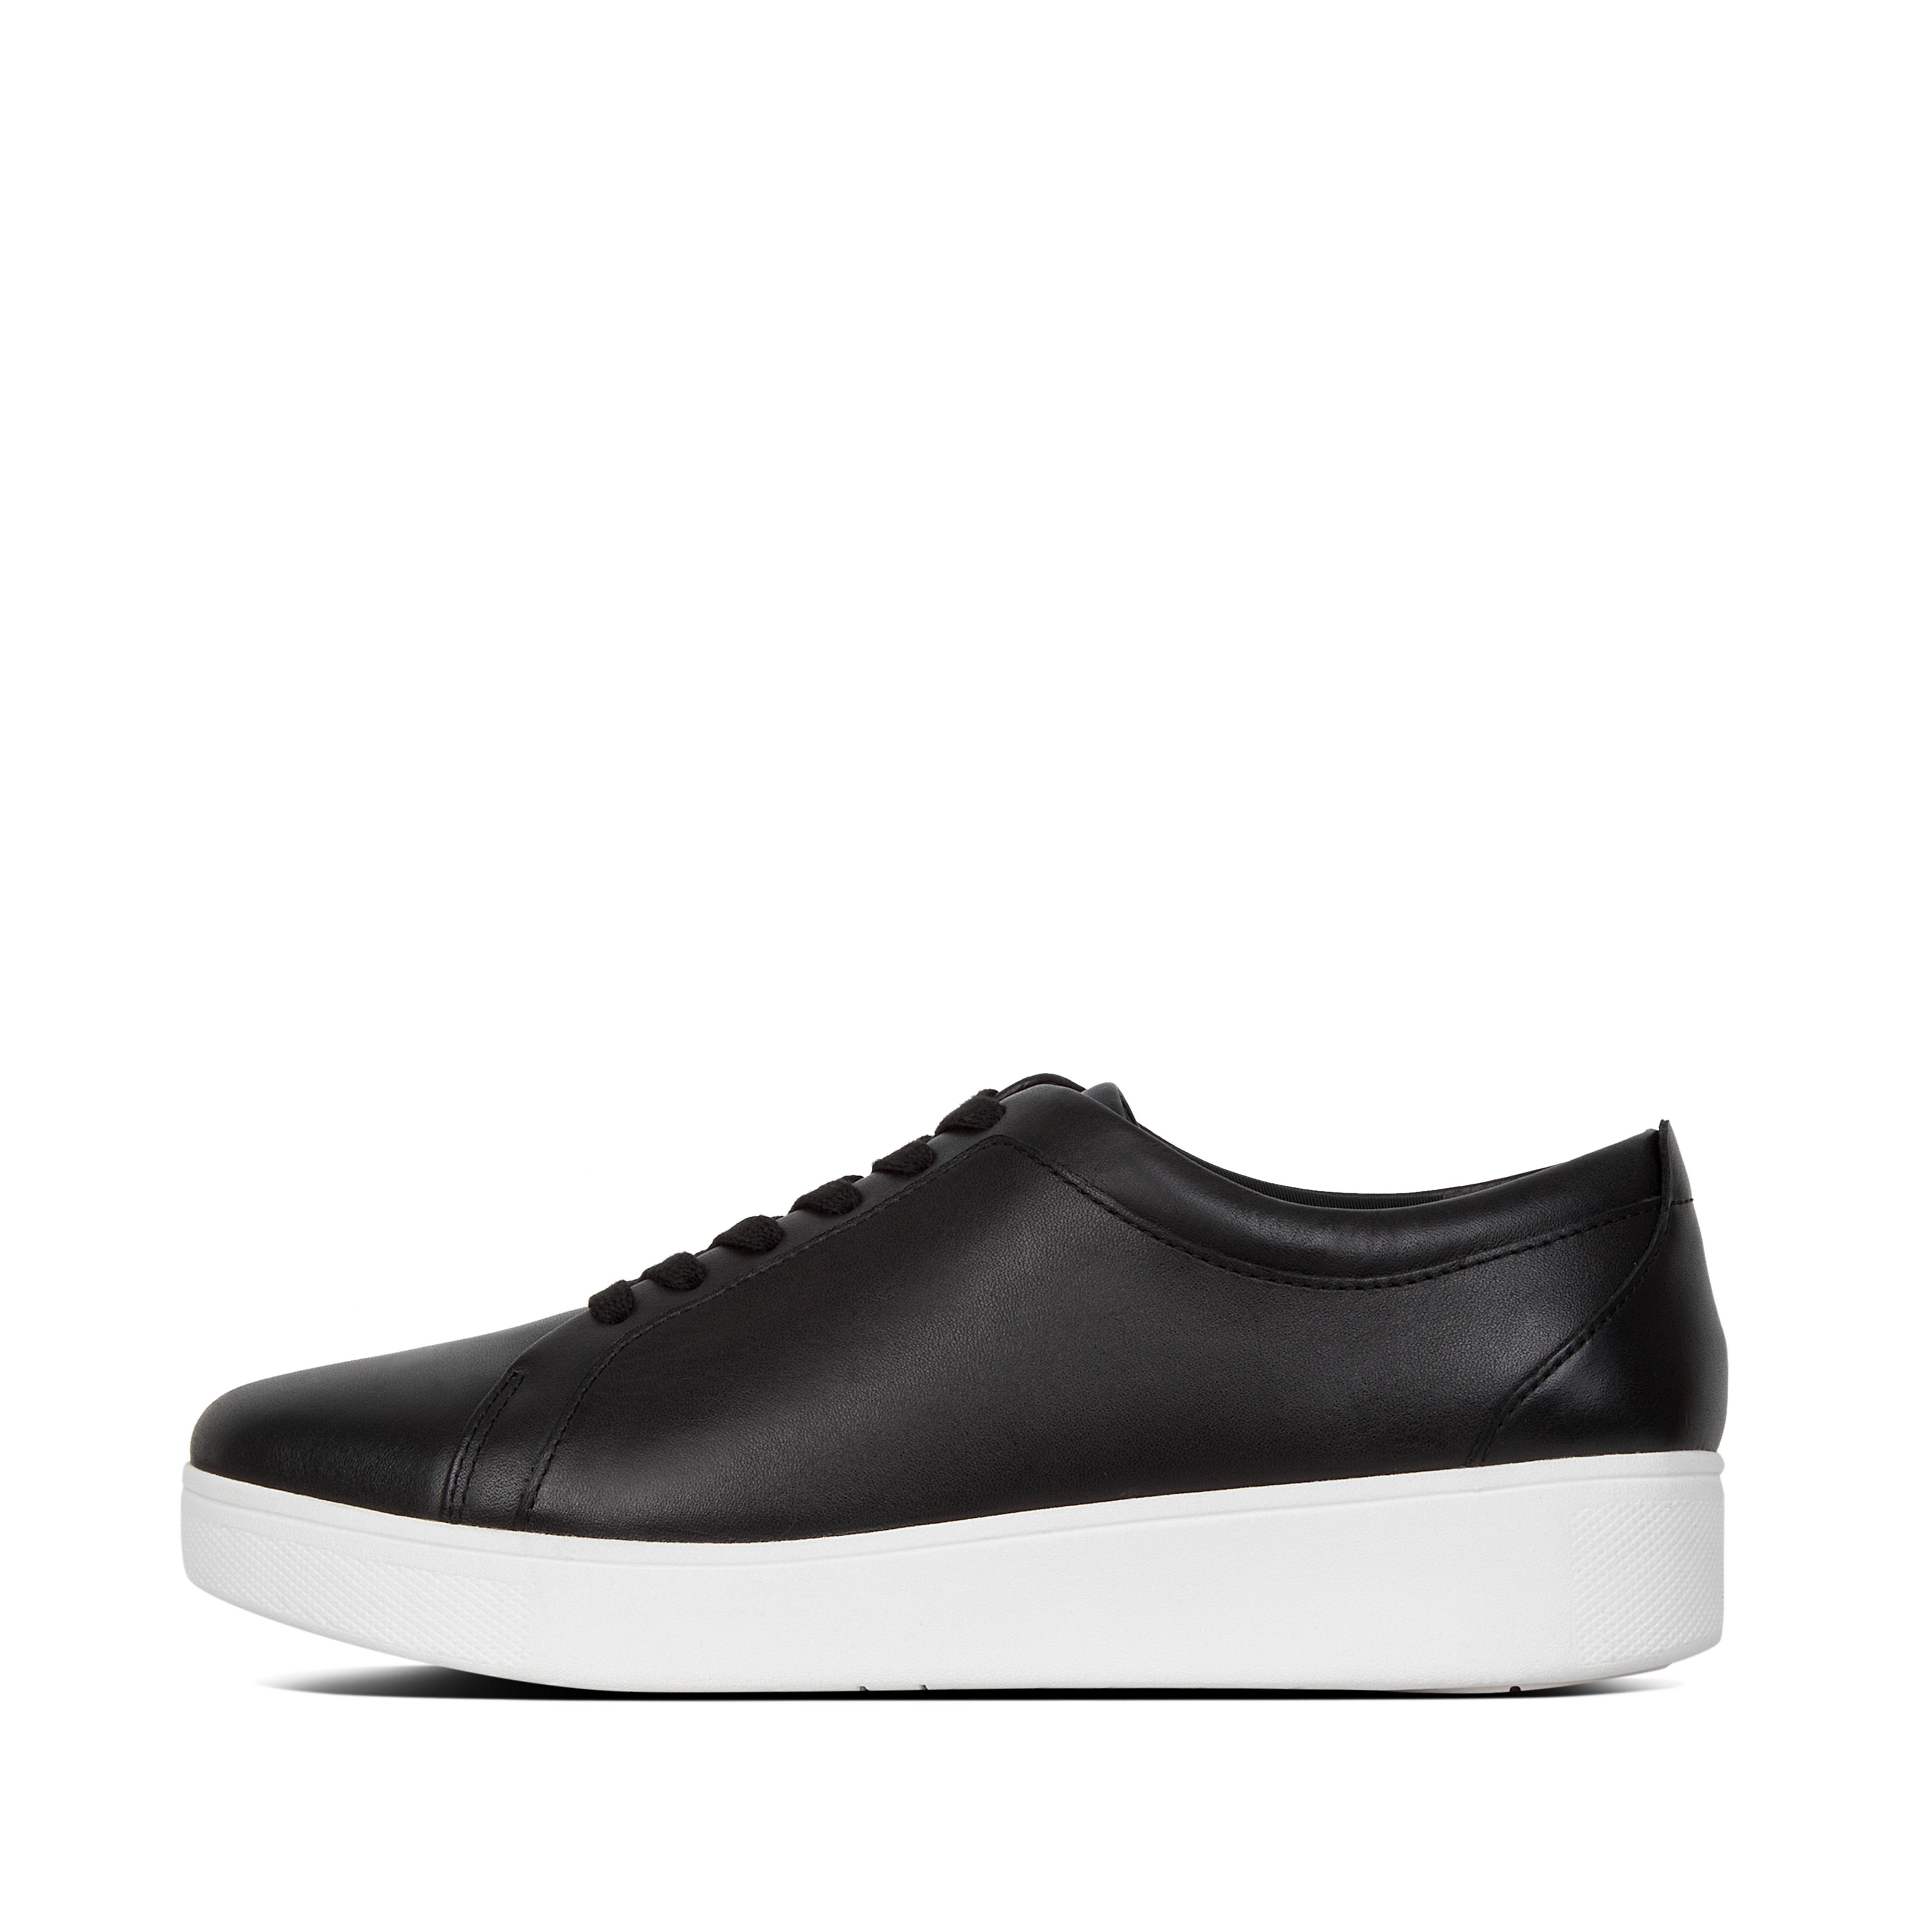 핏플랍 스니커즈 RALLY Leather Tennis Shoes , Leather Sneakers,Black